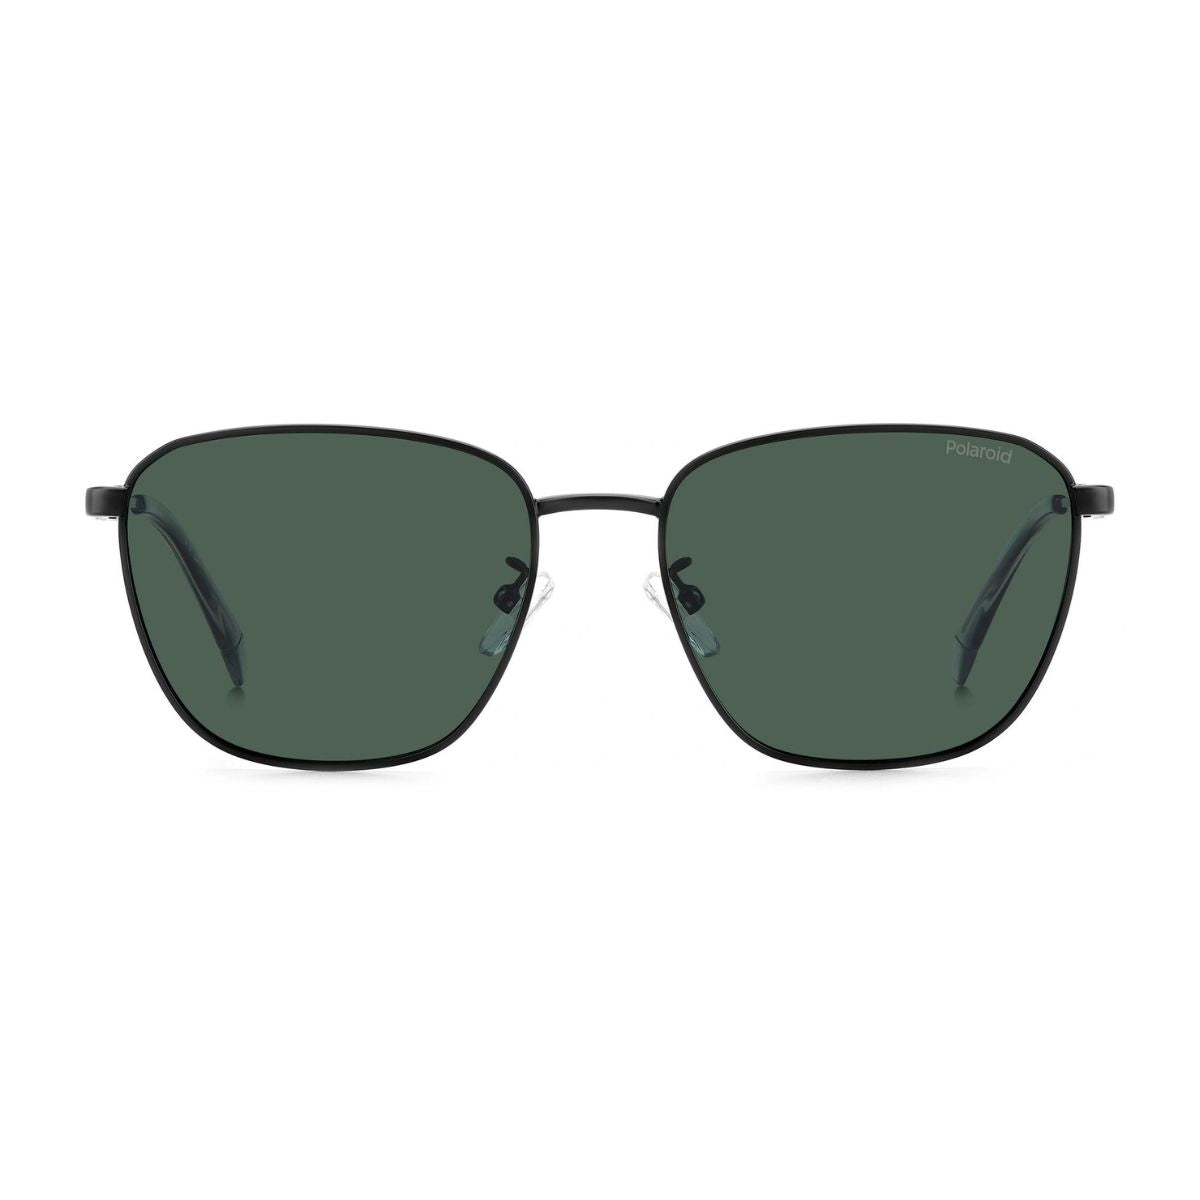 "Polariod 4159 003 Polarized Sunglasses For Men's At Optorium"